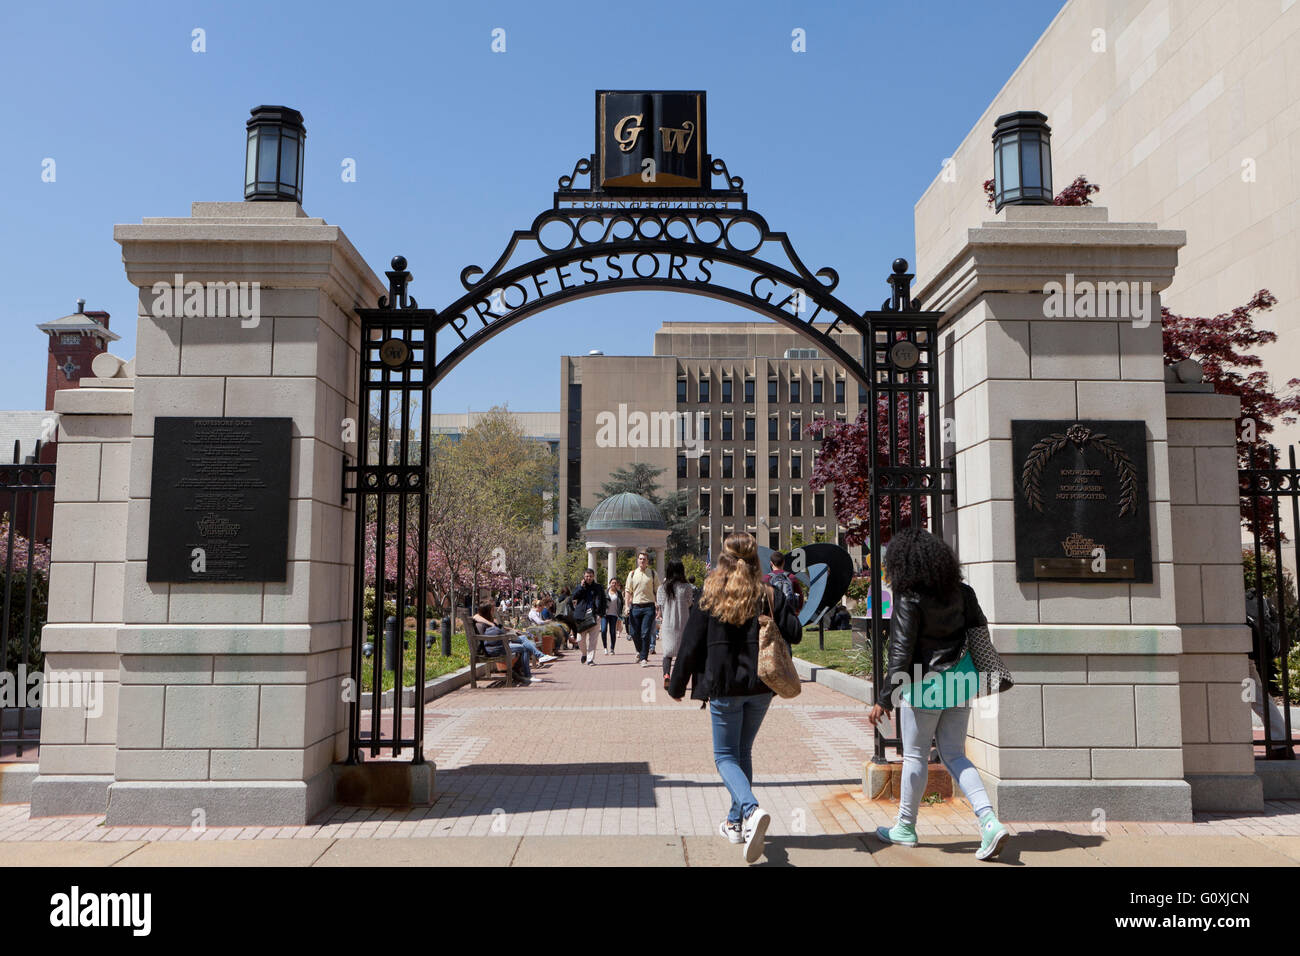 Professor's Gate at George Washington University - Washington, DC USA Stock Photo